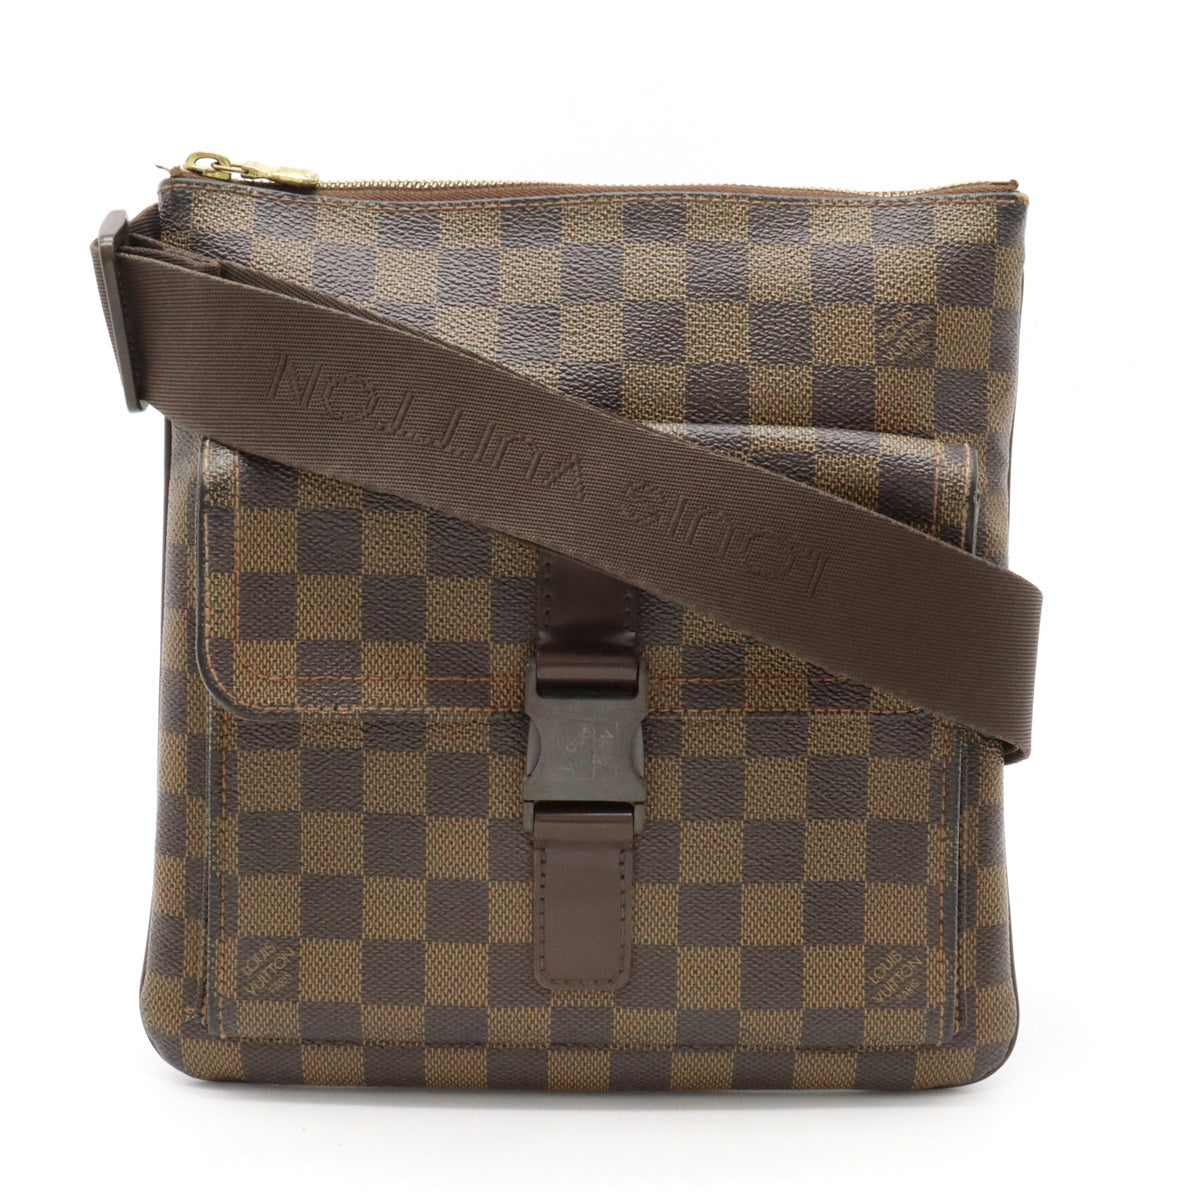 MCM Visest Shoulder Bag – Timeless Vintage Company